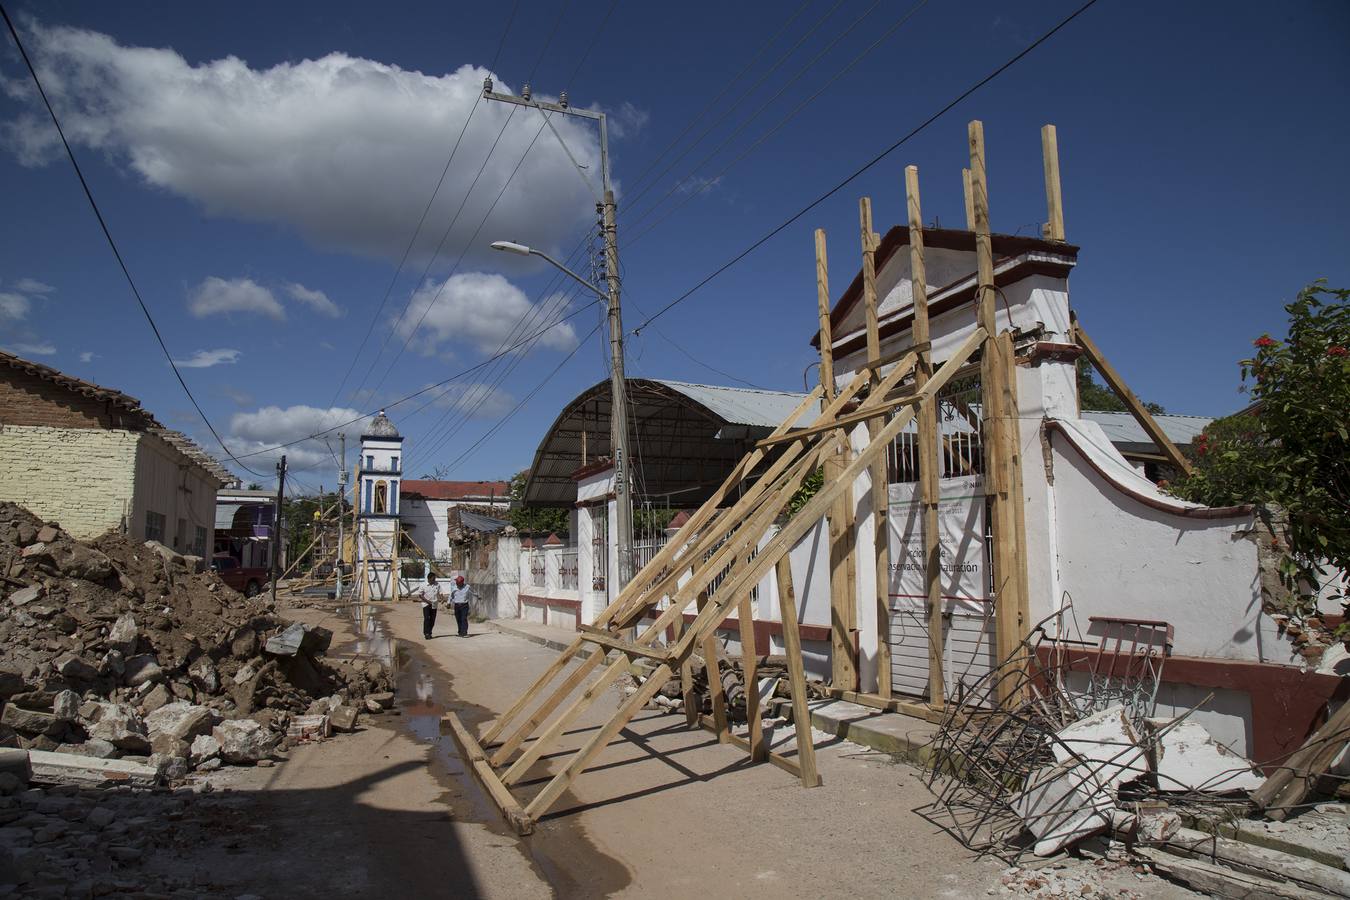 El estado de Oaxaca (México) está inmerso en un proceso de restauración de las iglesias y otros bienes históricos y culturales dañados por los sismos de septiembre, con lo que se pretende ayudar a recuperar parte de la "identidad" de los pueblos damnificados